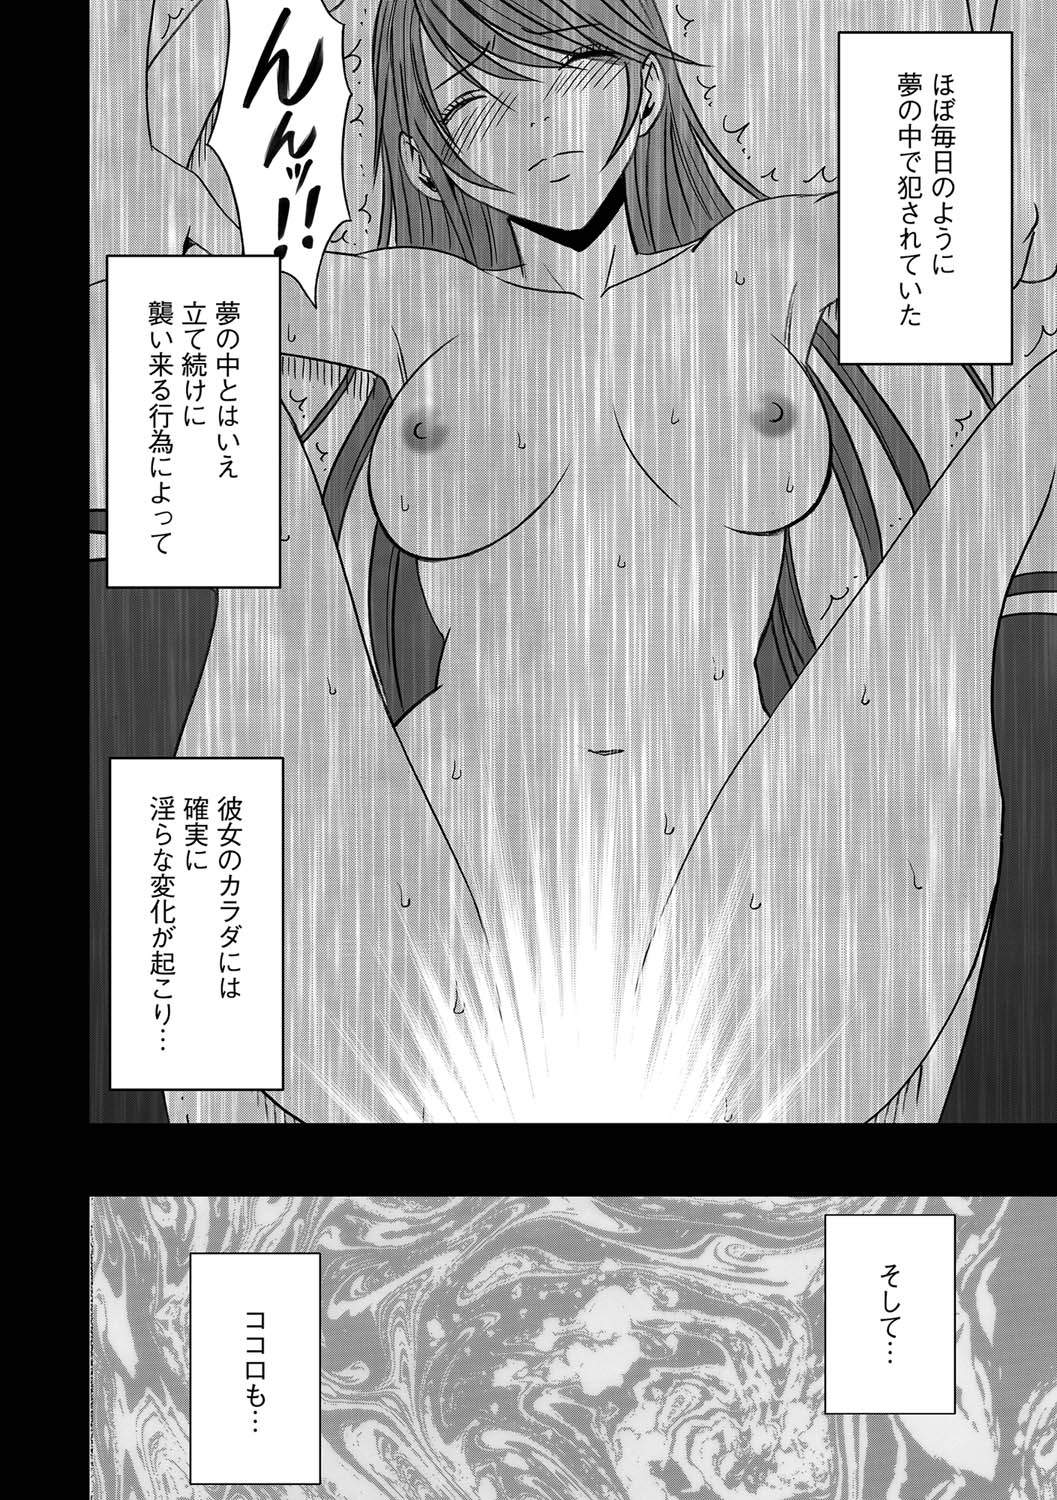 [Crimson] Virgin Control takane no hana o tsumu you ni 4 page 6 full